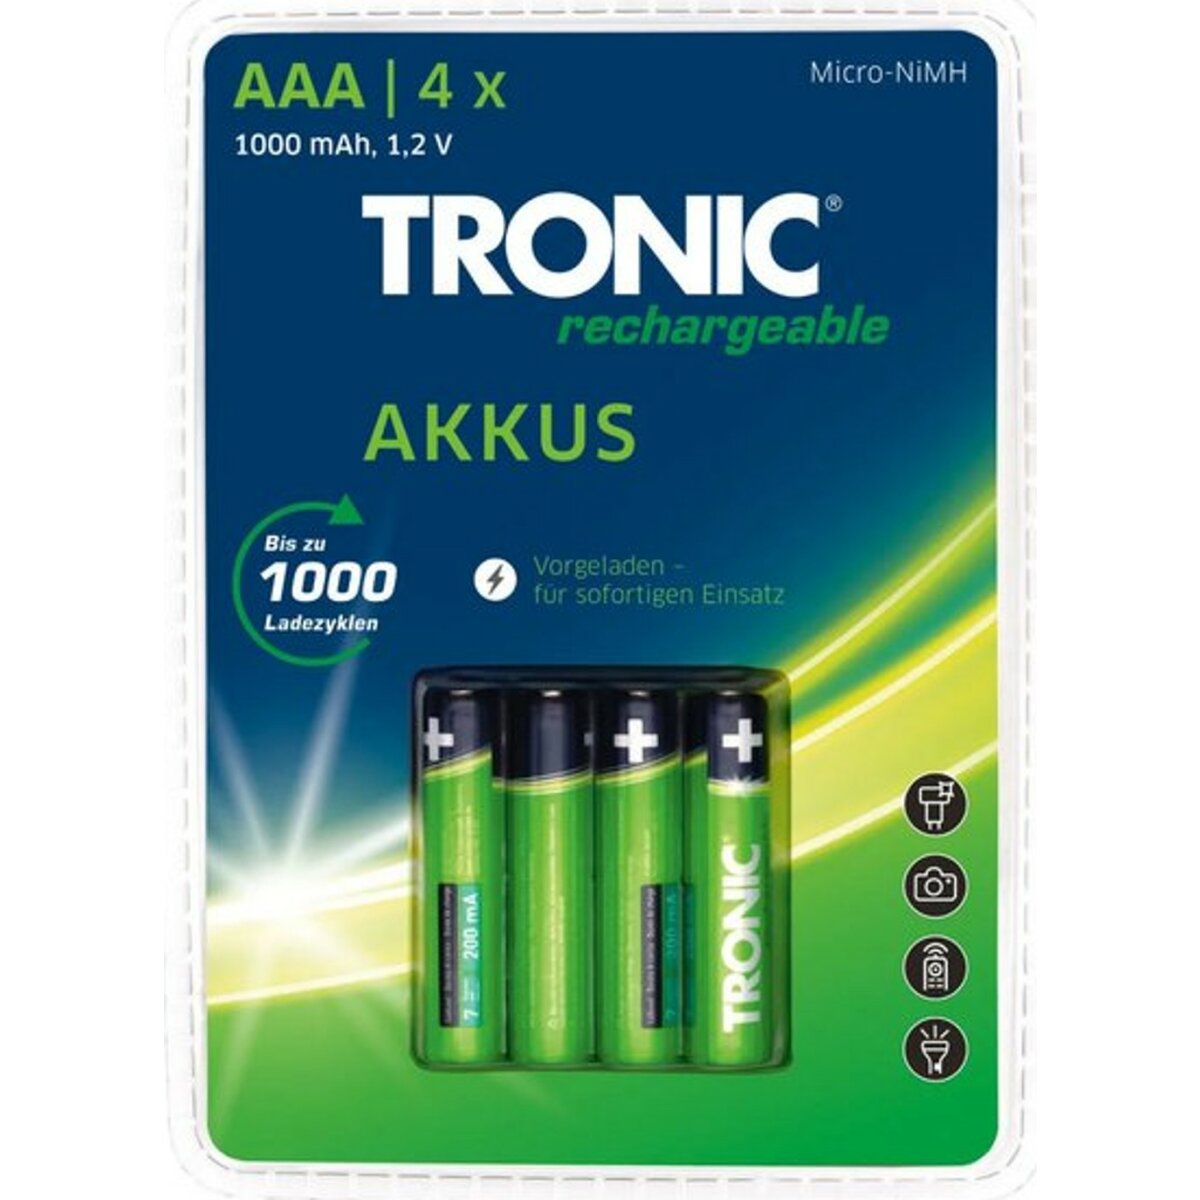 TRONIC Akku Ready 2 Use 11/45 Stück, -Ni-MH, AAA/Micro/HR03/HRMRI03 4